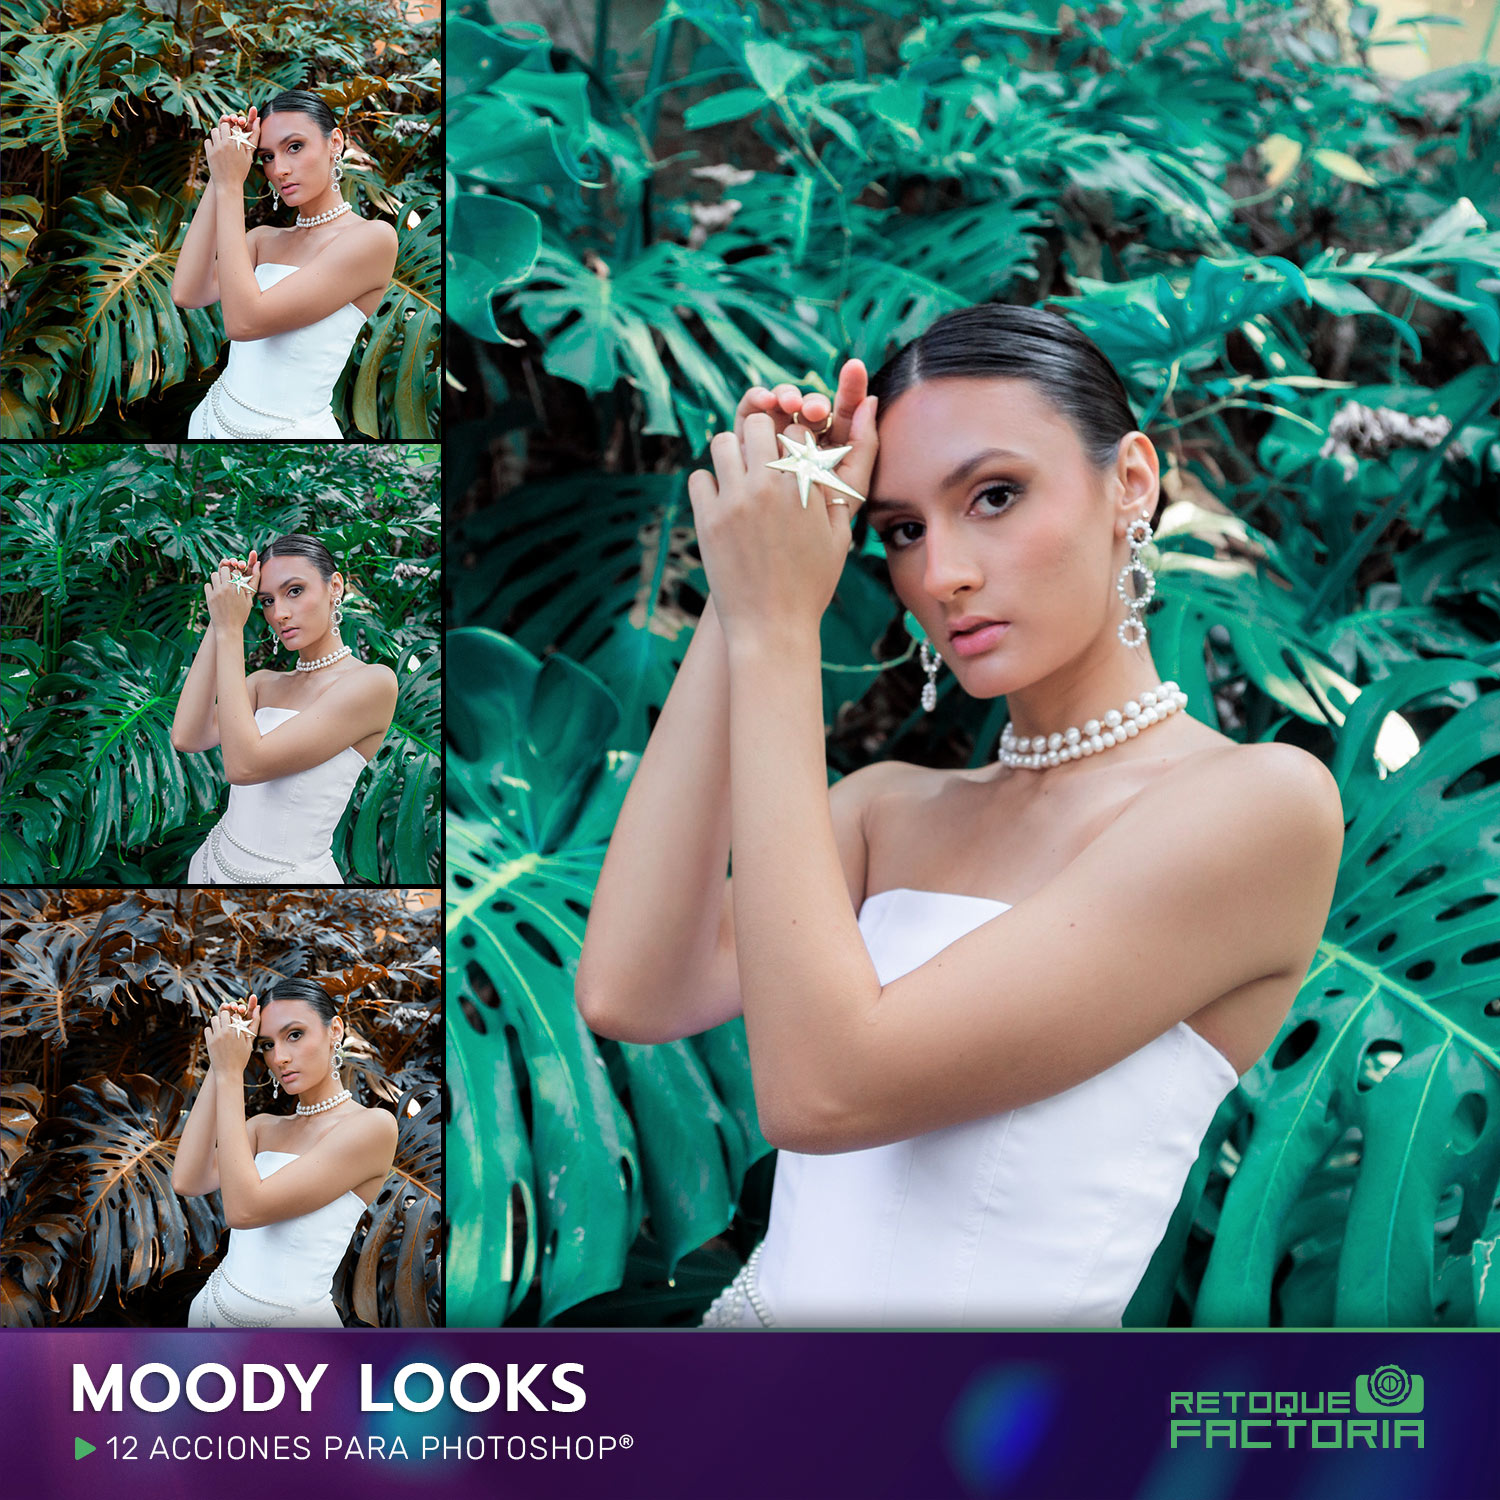 Moody-Looks-Acciones-Photoshop-Retoque-Factoria